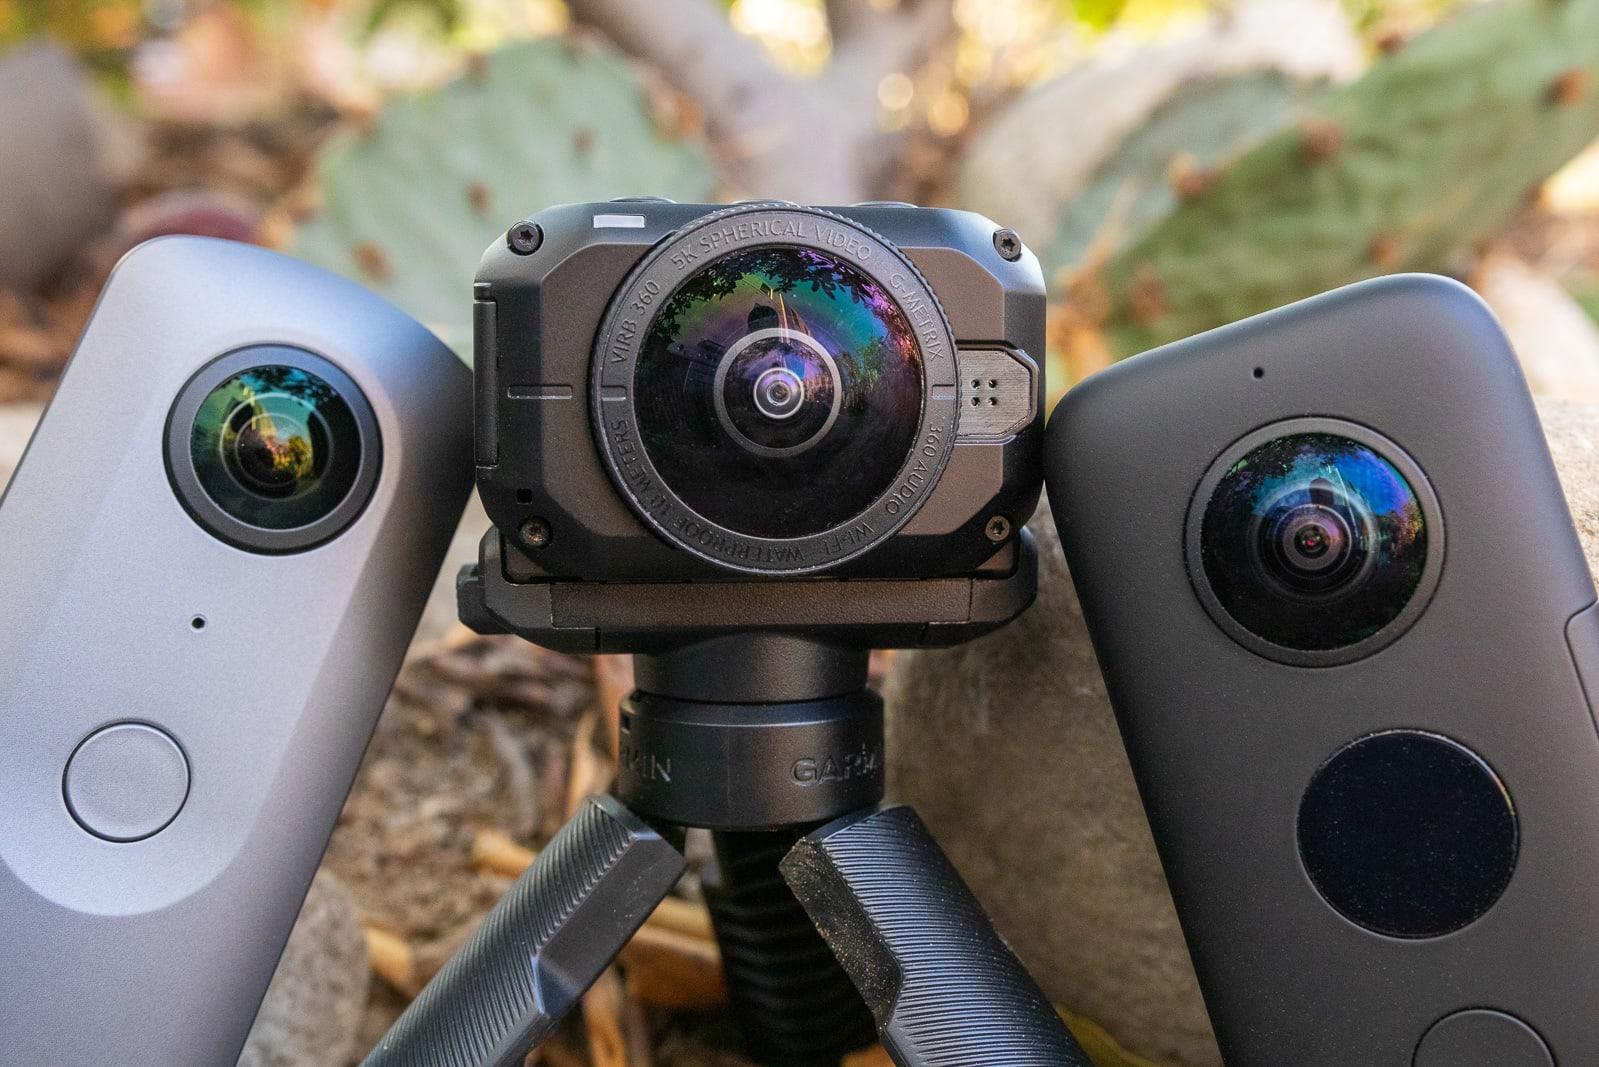 360 degree cameras